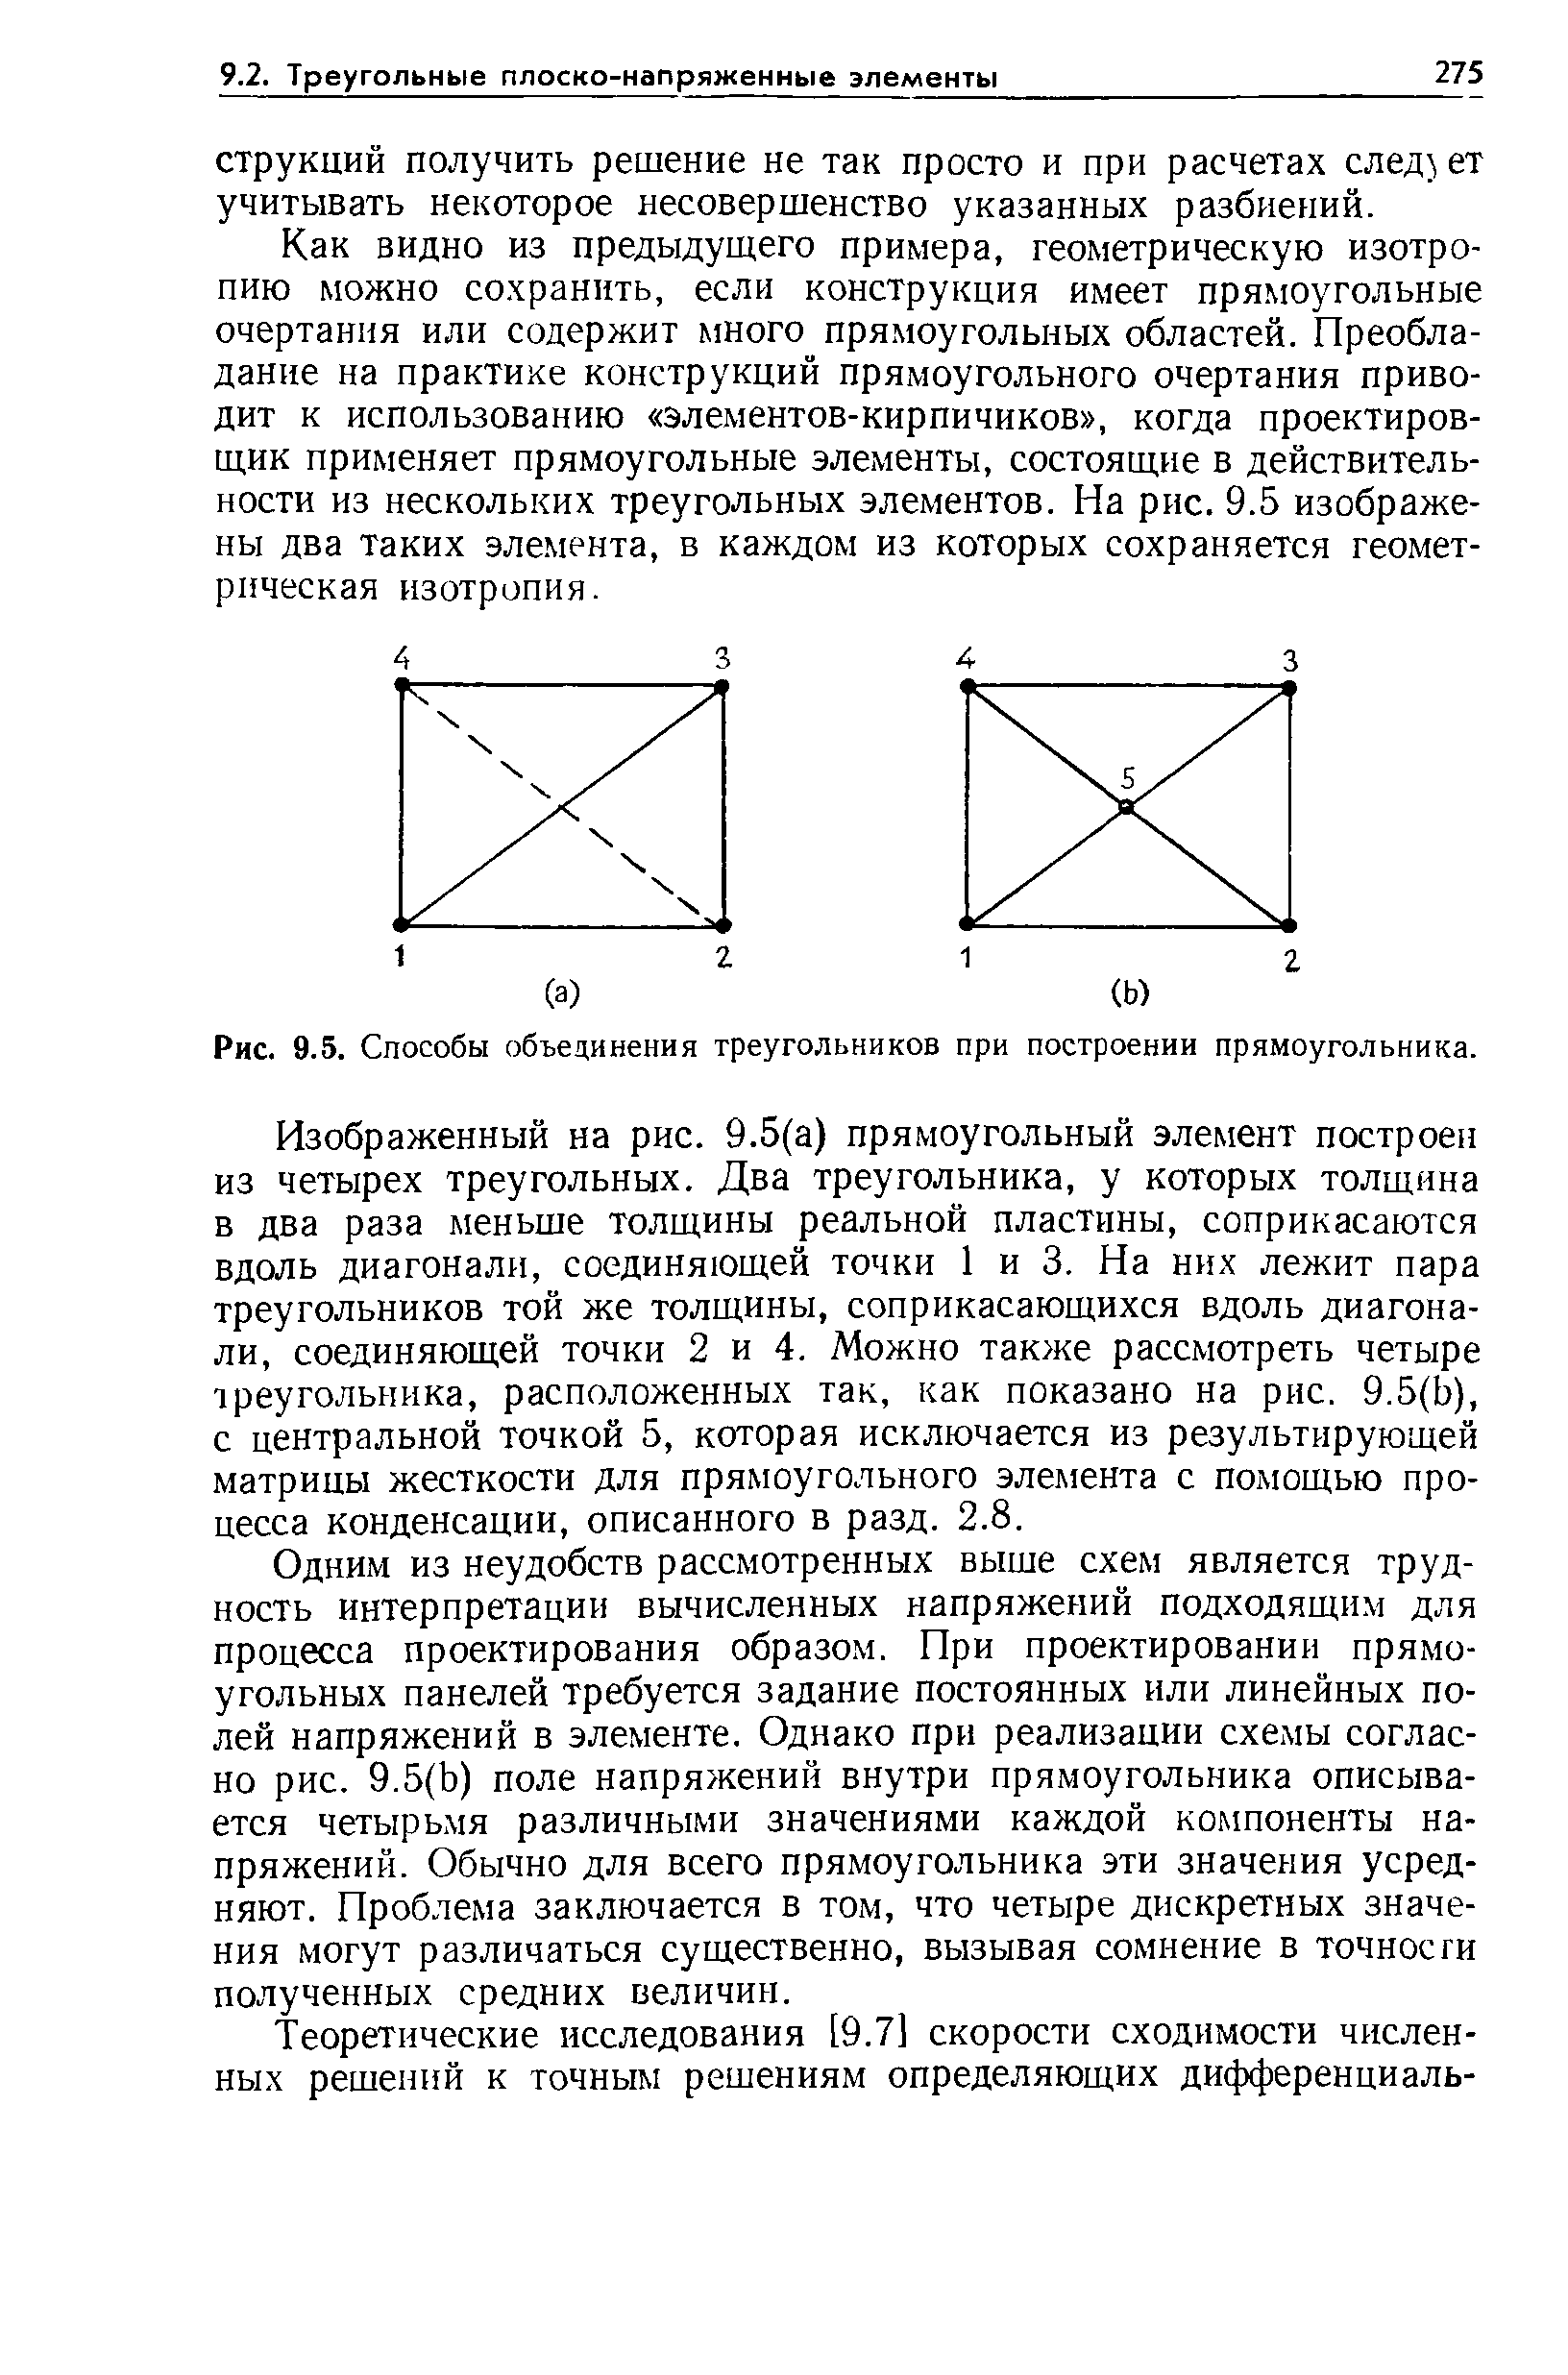 Рис. 9.5. Способы объединения треугольников при построении прямоугольника.
